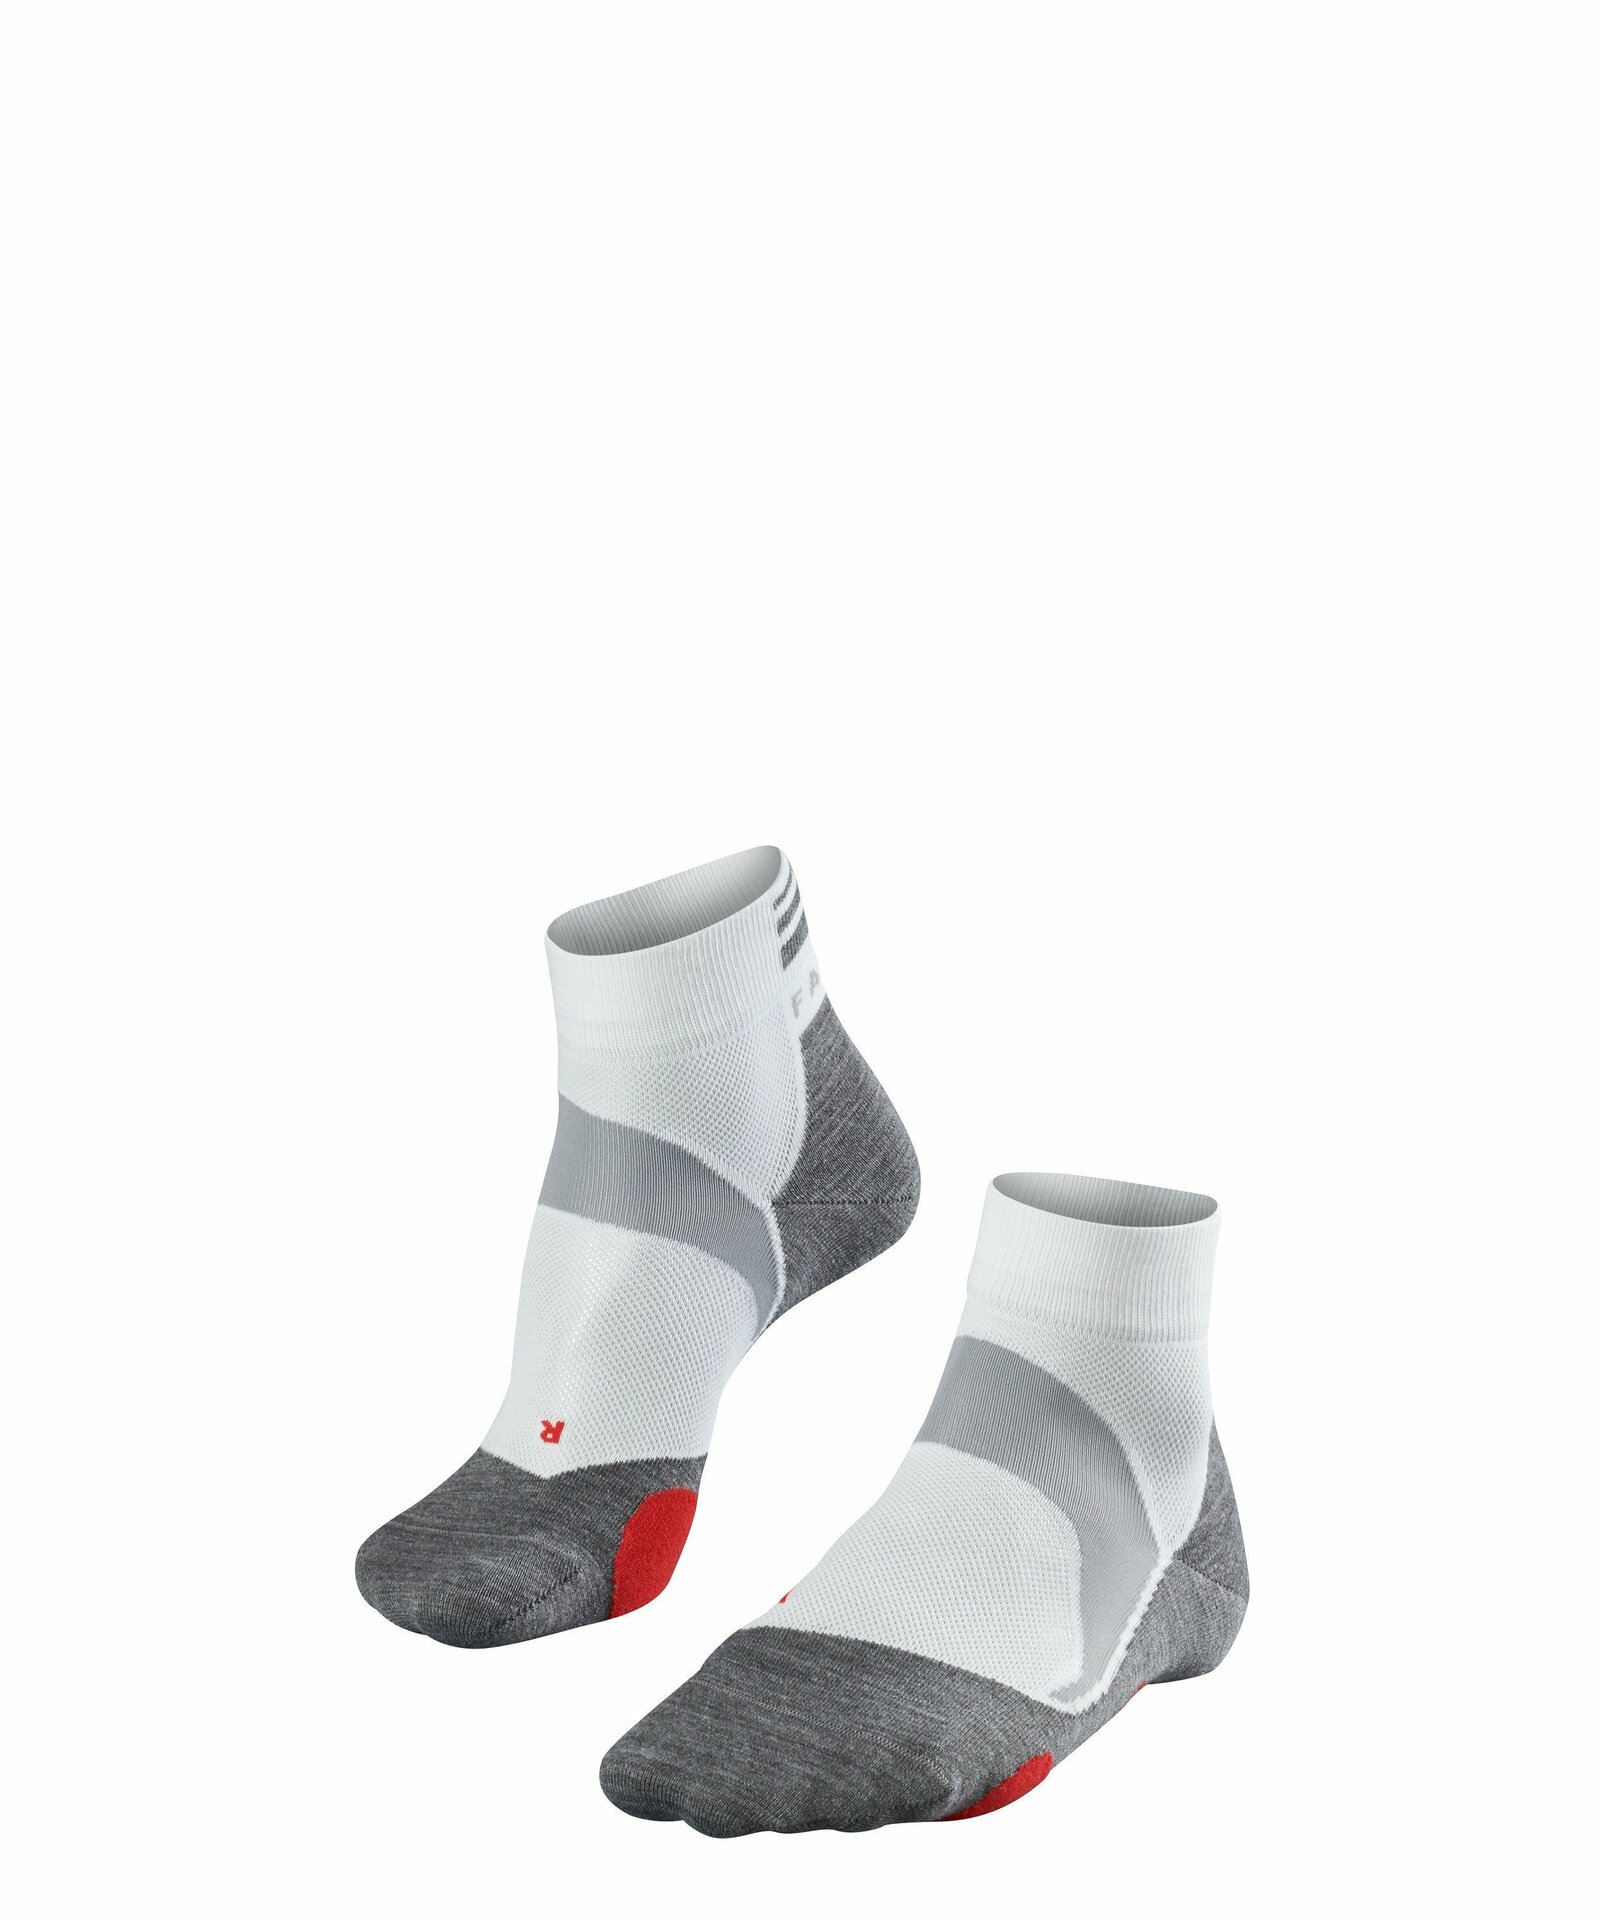 Falke BC5 Short unisex Socken